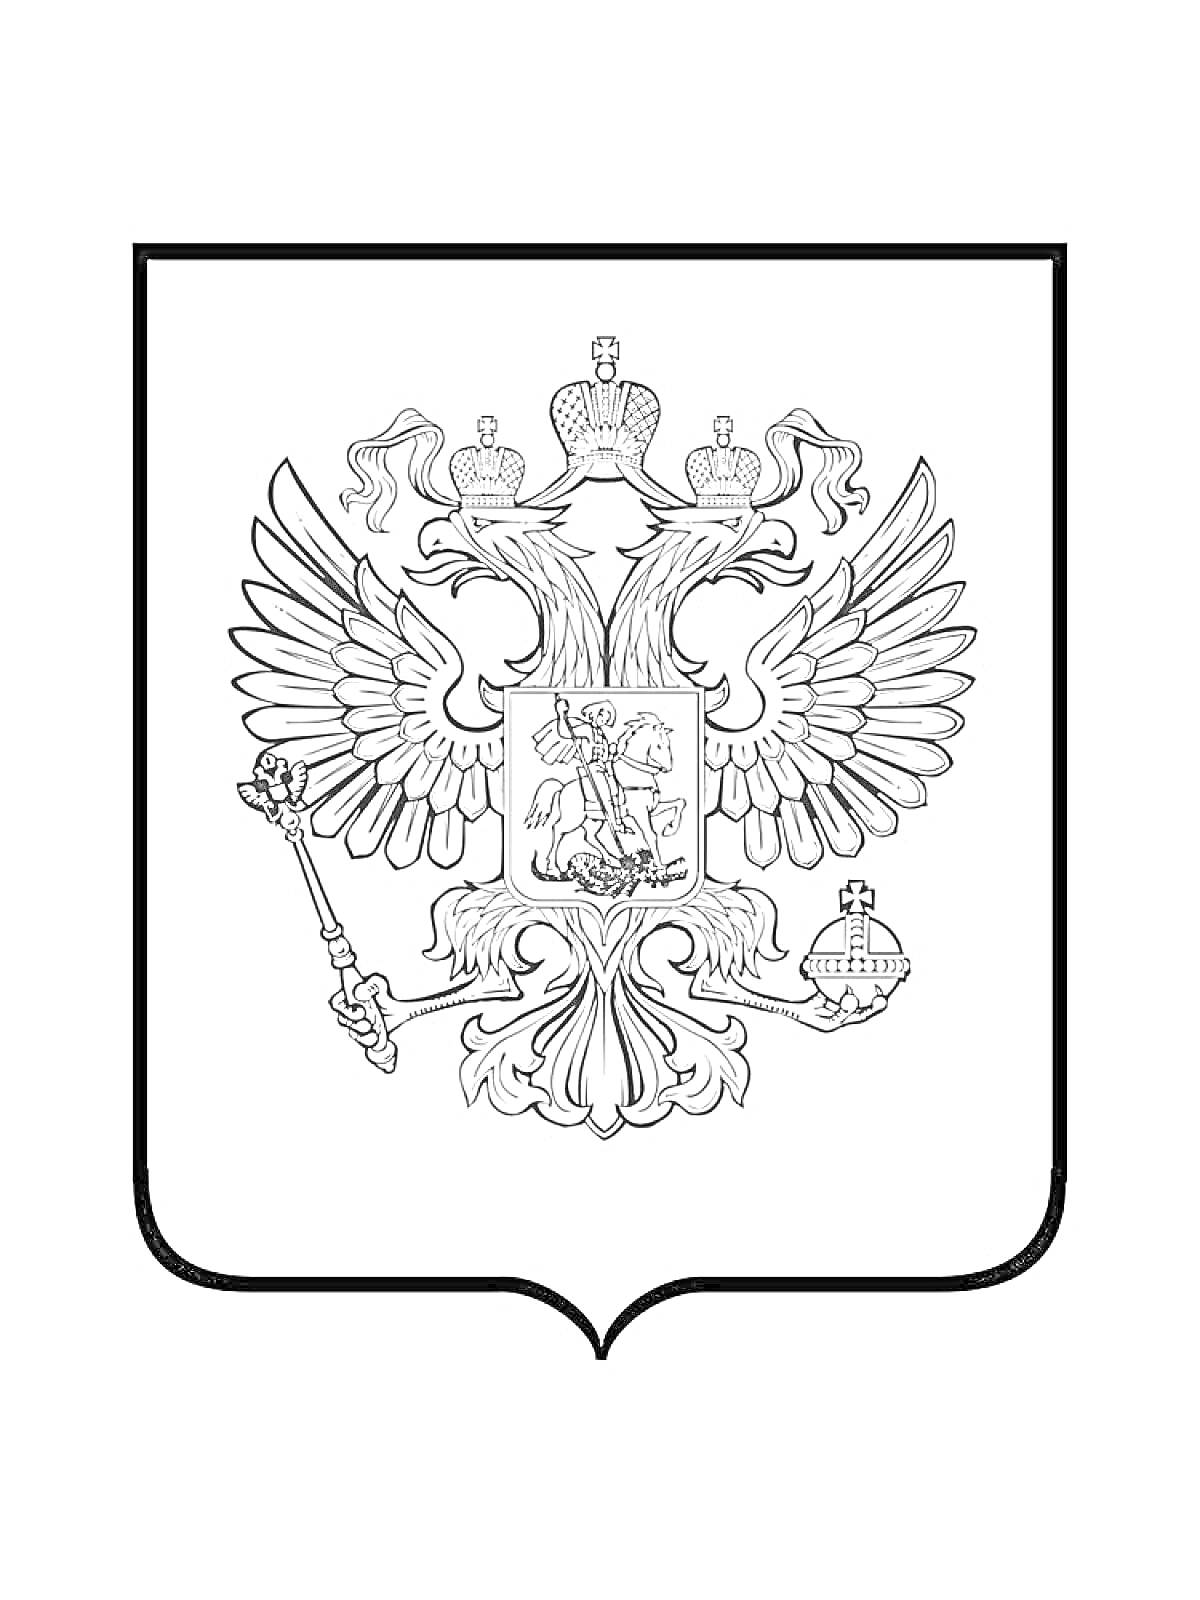 Герб с двуглавым орлом, держащим скипетр и державу, с щитом на груди, на котором изображен святой Георгий, поражающий змея